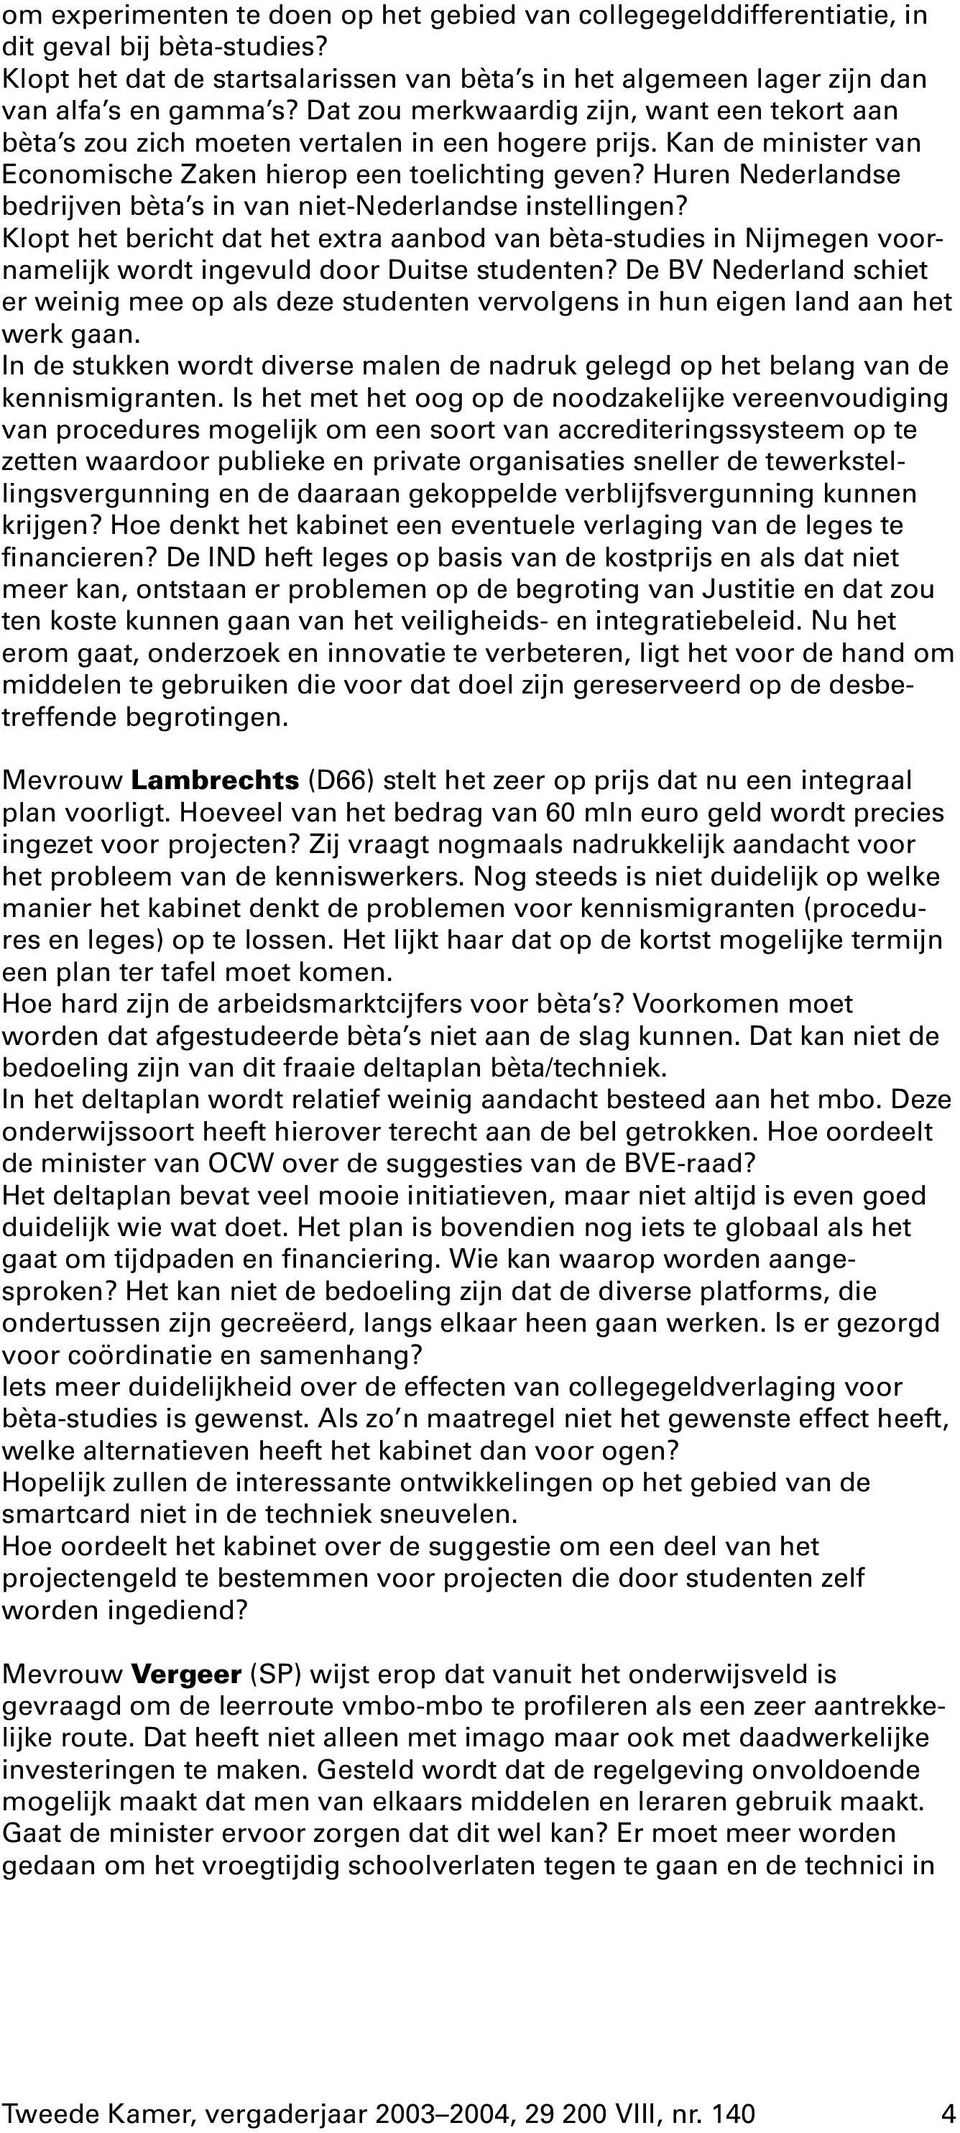 Huren Nederlandse bedrijven bèta s in van niet-nederlandse instellingen? Klopt het bericht dat het extra aanbod van bèta-studies in Nijmegen voornamelijkwordt ingevuld door Duitse studenten?